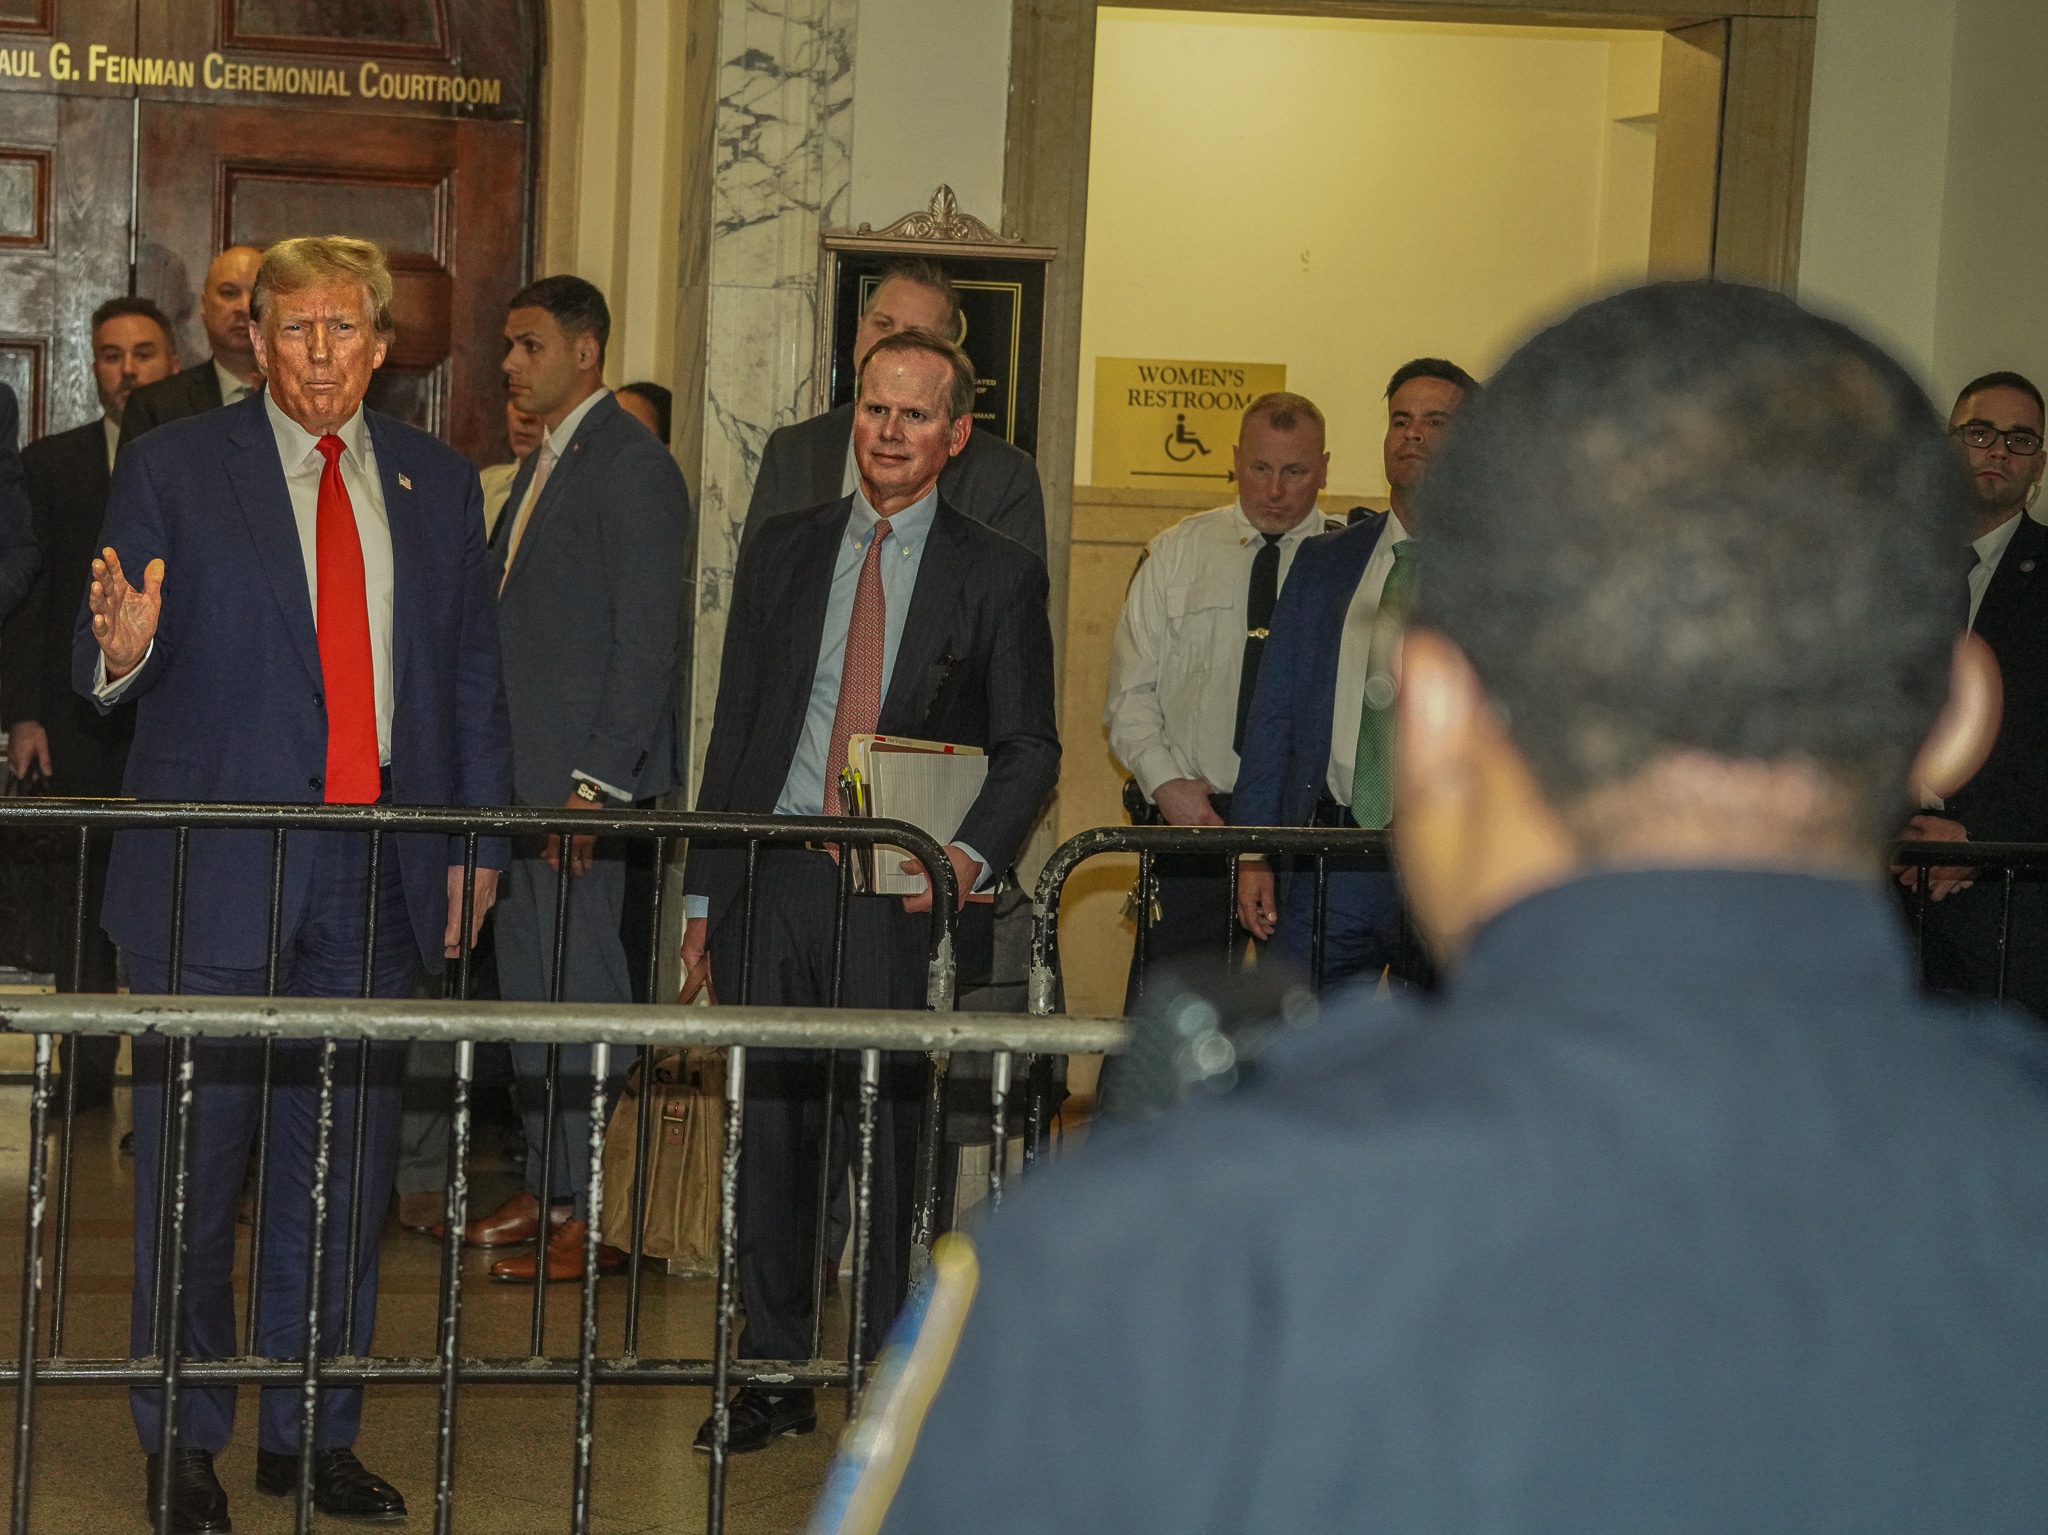 Donald Trump at civil fraud trial